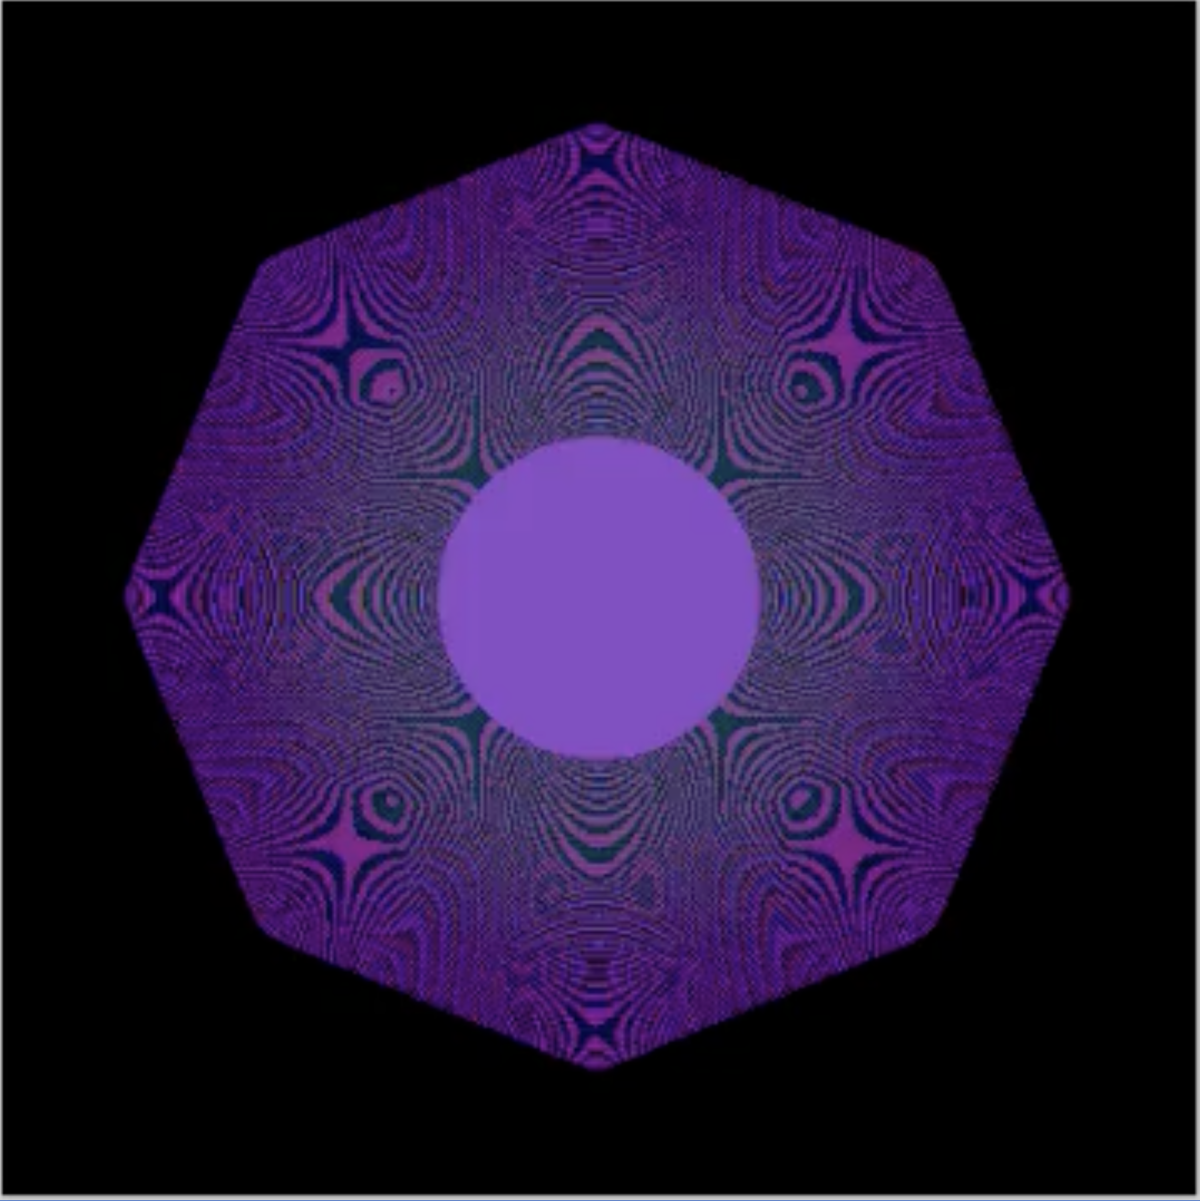 Un alambic du Quantum NFT, un point violet pixélisé.